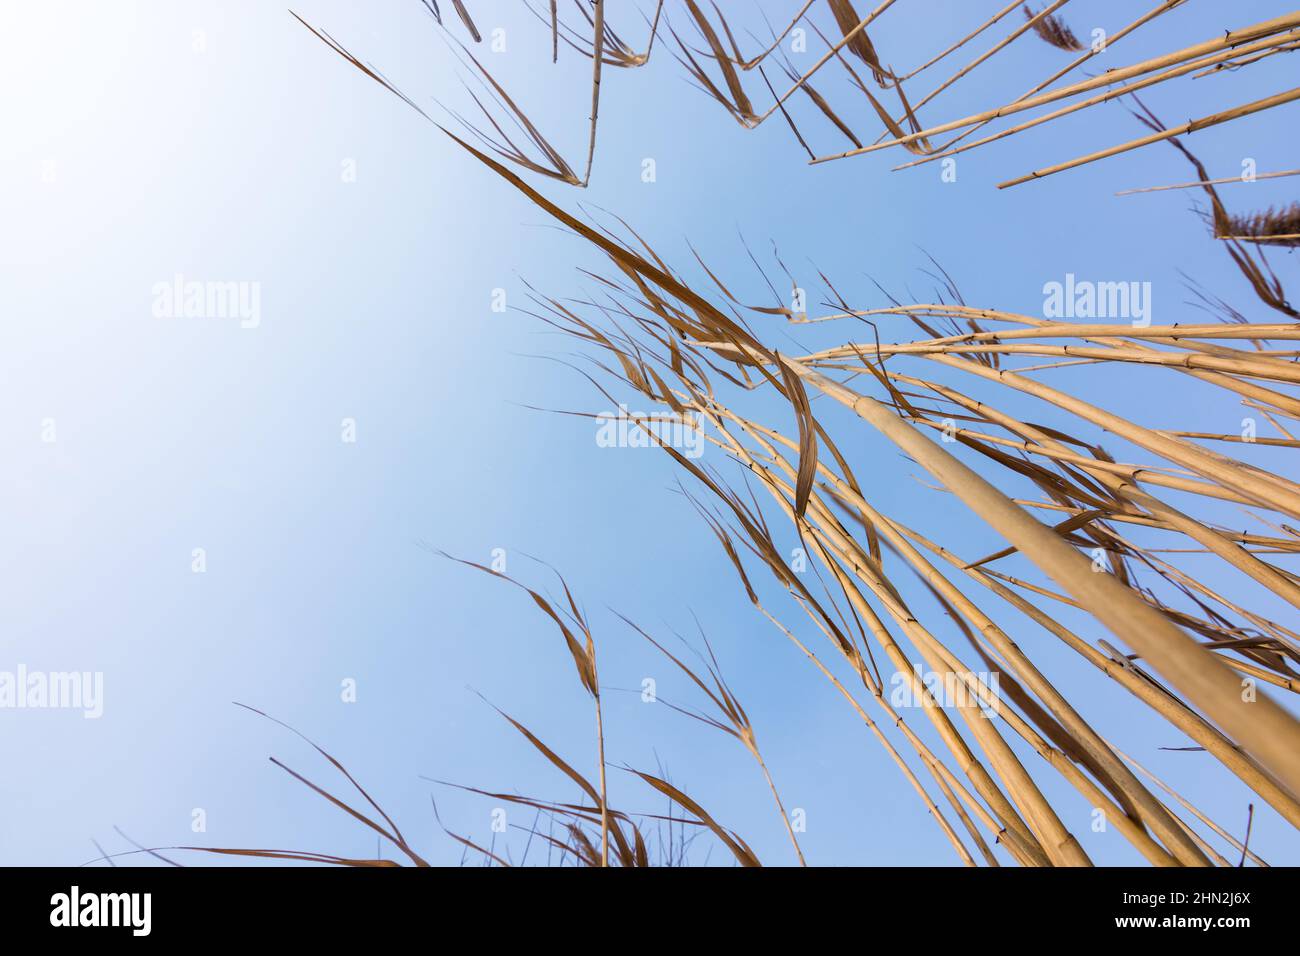 Aufwachsen zum Himmel. Bodenansicht von trockenen Schilfhalmen, die auf dem Fluss wachsen. Stockfoto